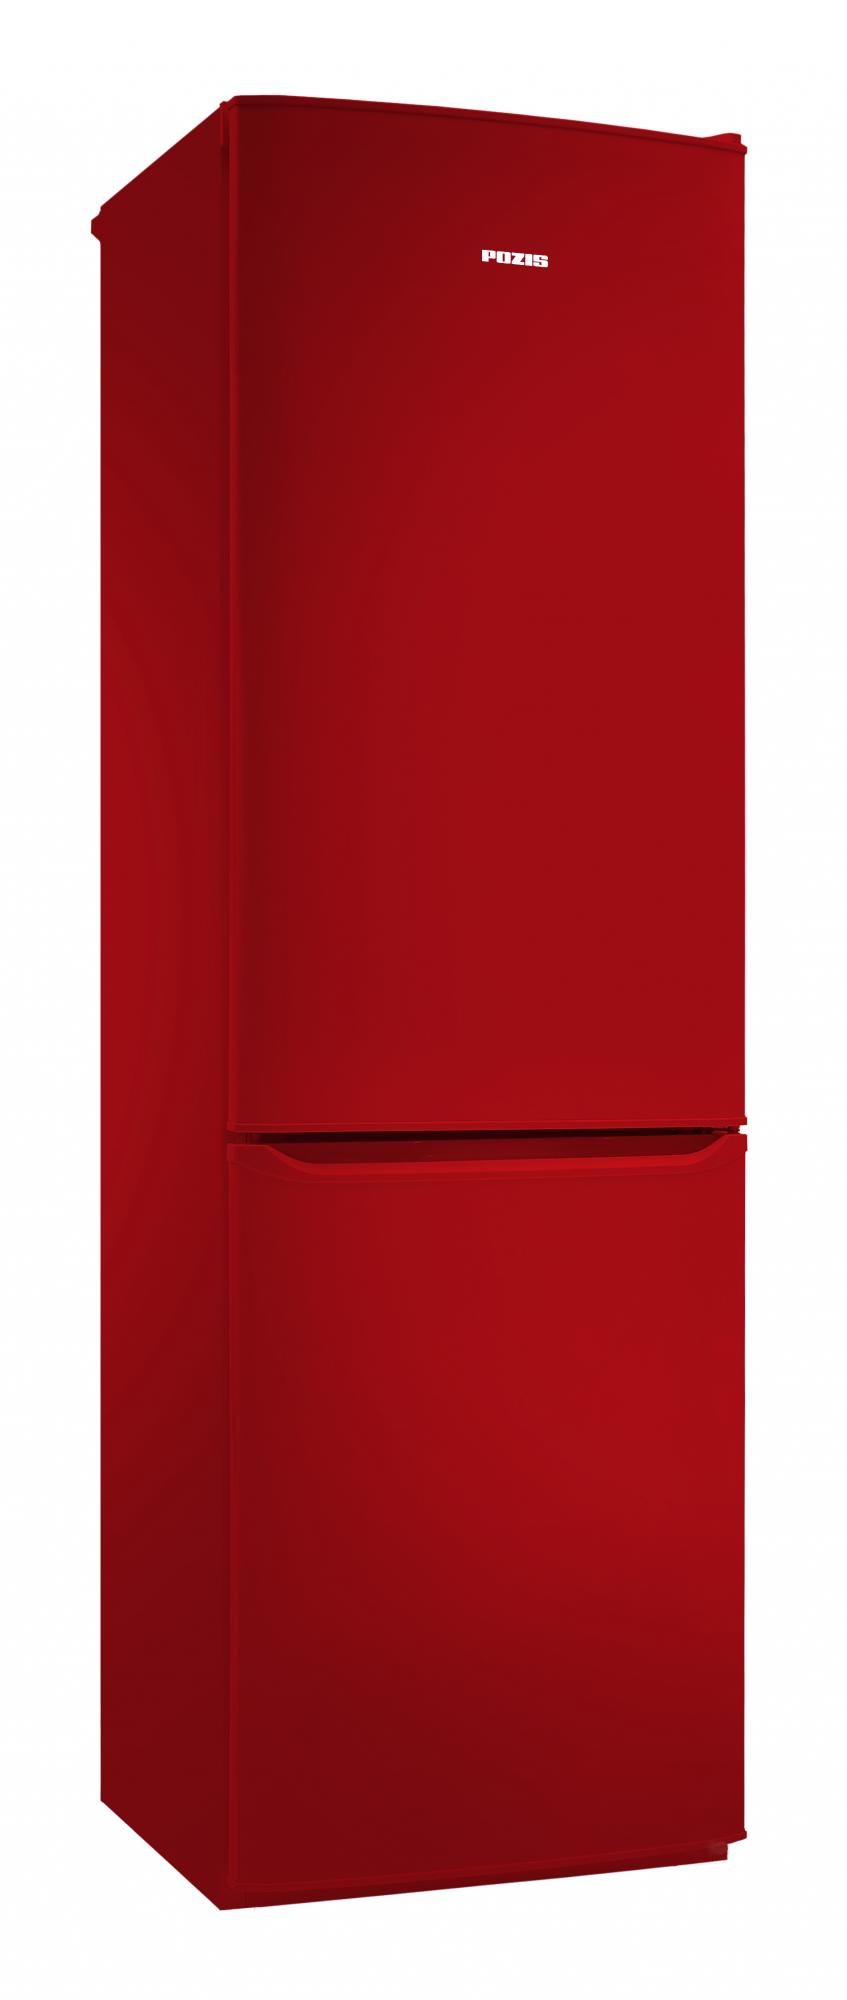 Двухкамерный холодильник POZIS RK-149 рубиновый																		 — описание, фото, цены в интернет-магазине Премьер Техно